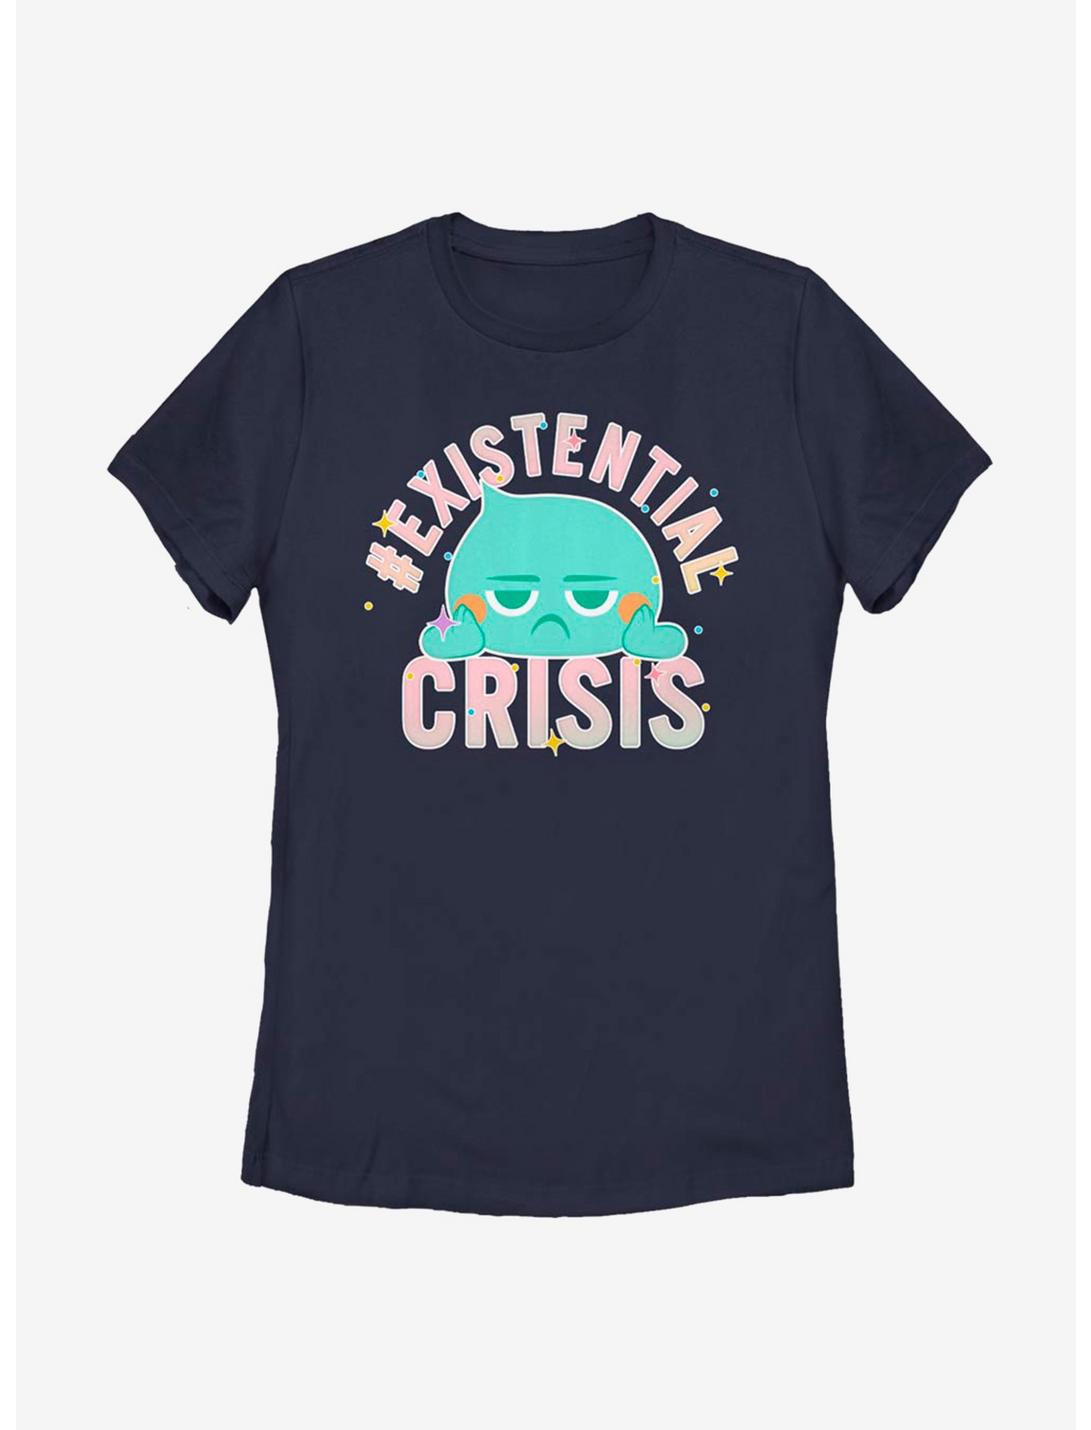 Disney Pixar Soul Existential Crisis Womens T-Shirt, NAVY, hi-res